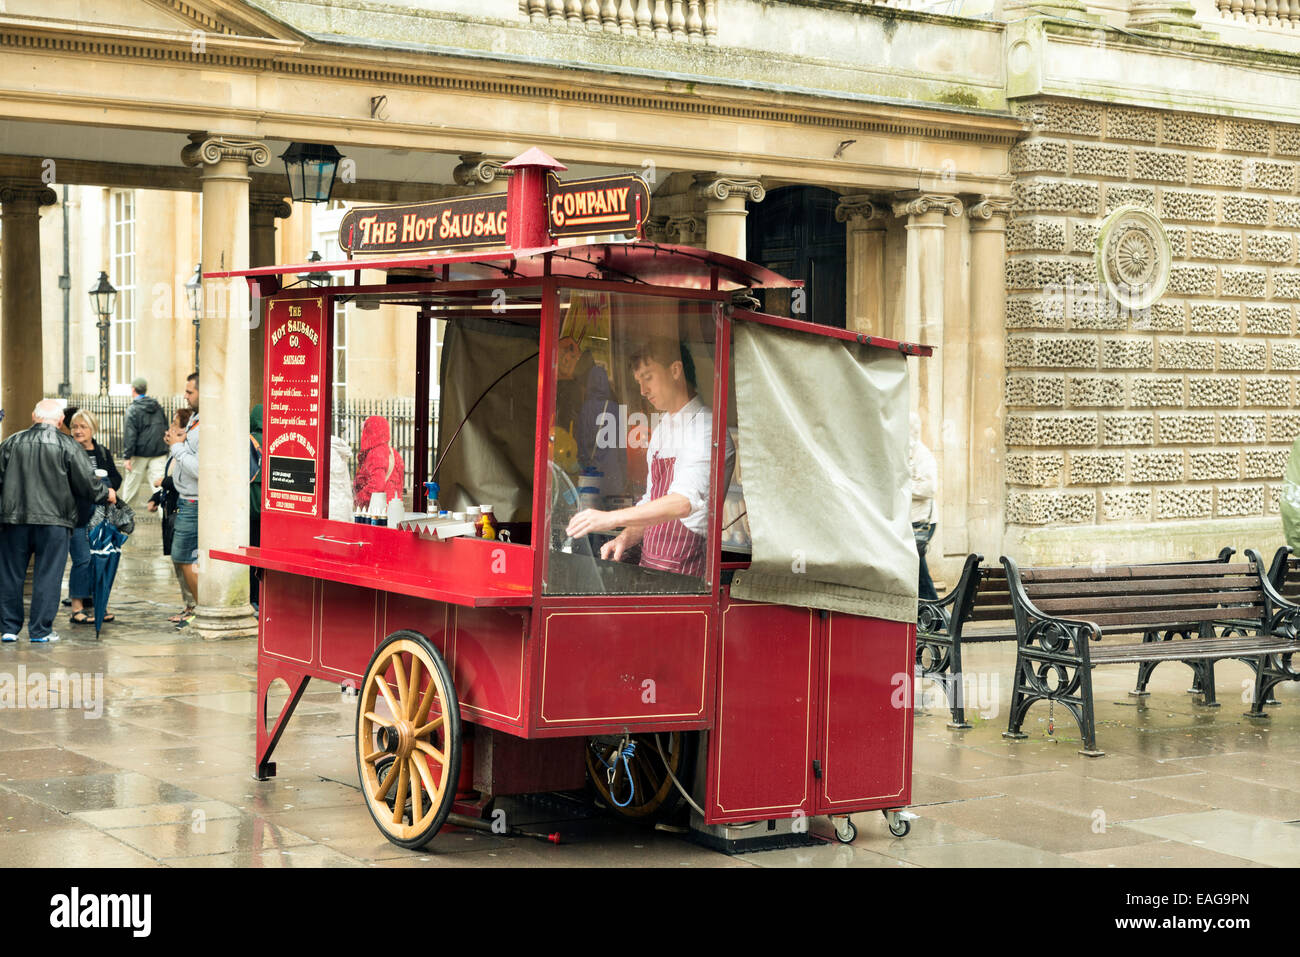 BATH, Regno Unito - 4 giugno 2014: la salsiccia calda Azienda nel centro di Bath, Inghilterra. Un venditore di attesa per i clienti a venire Foto Stock